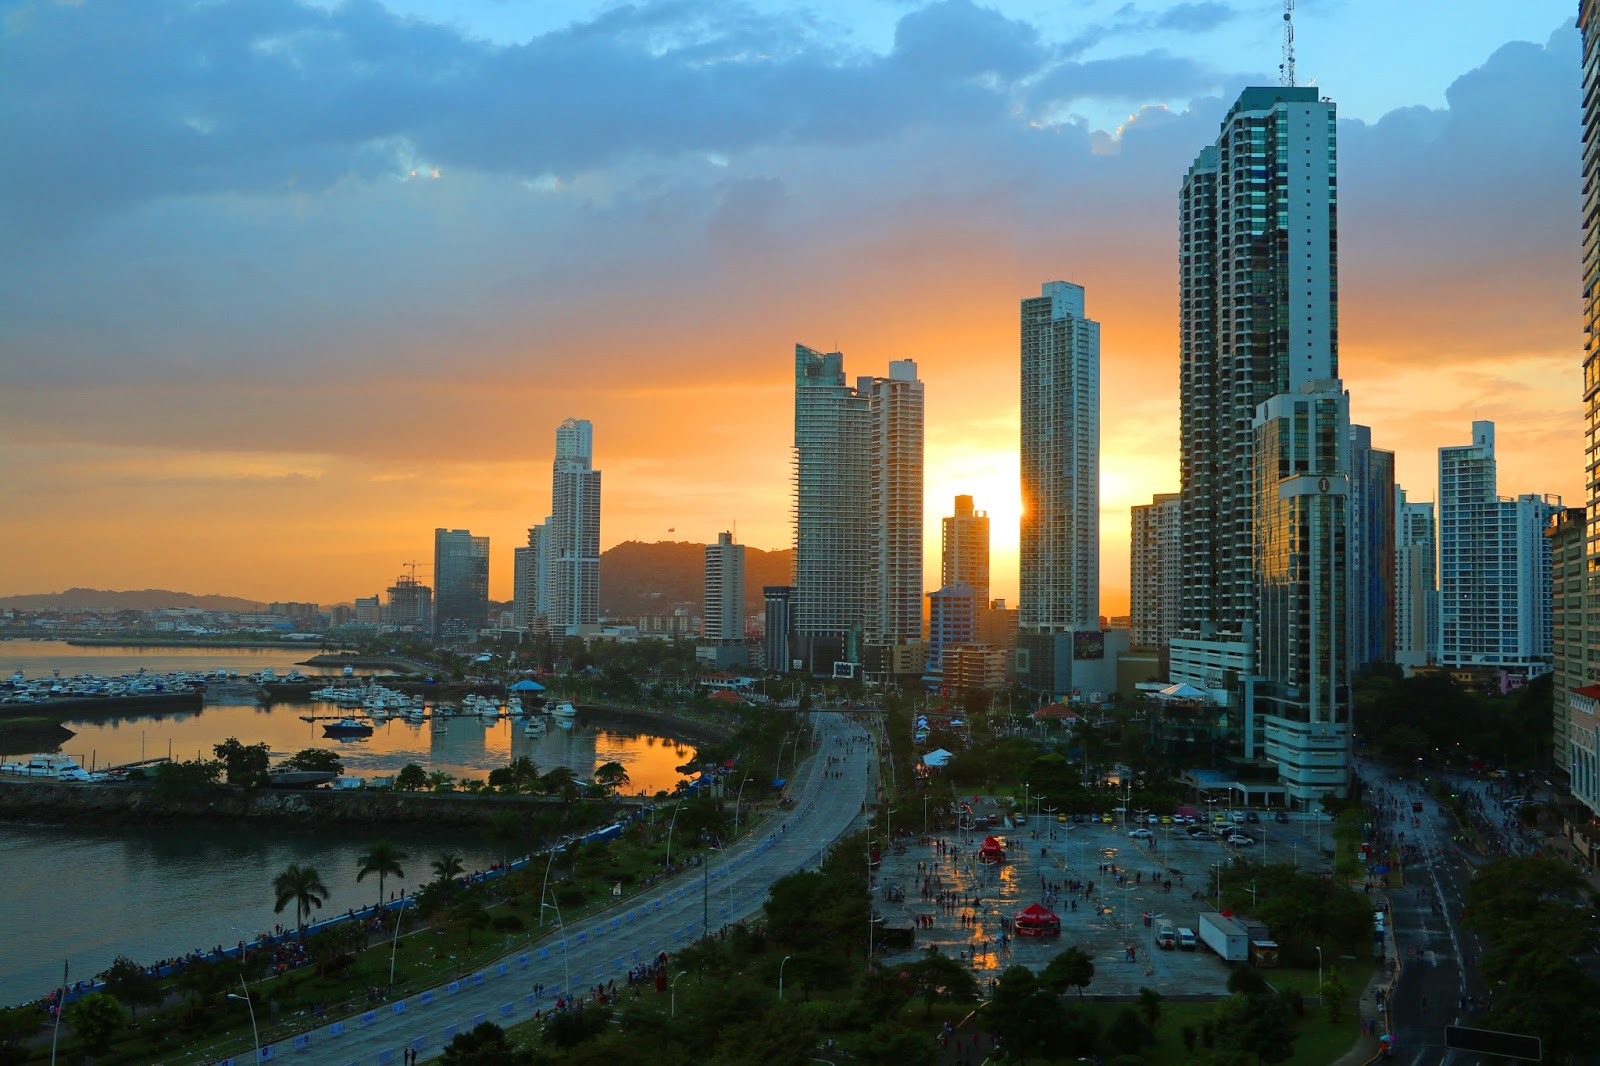 Beautiful sunset at Panama City